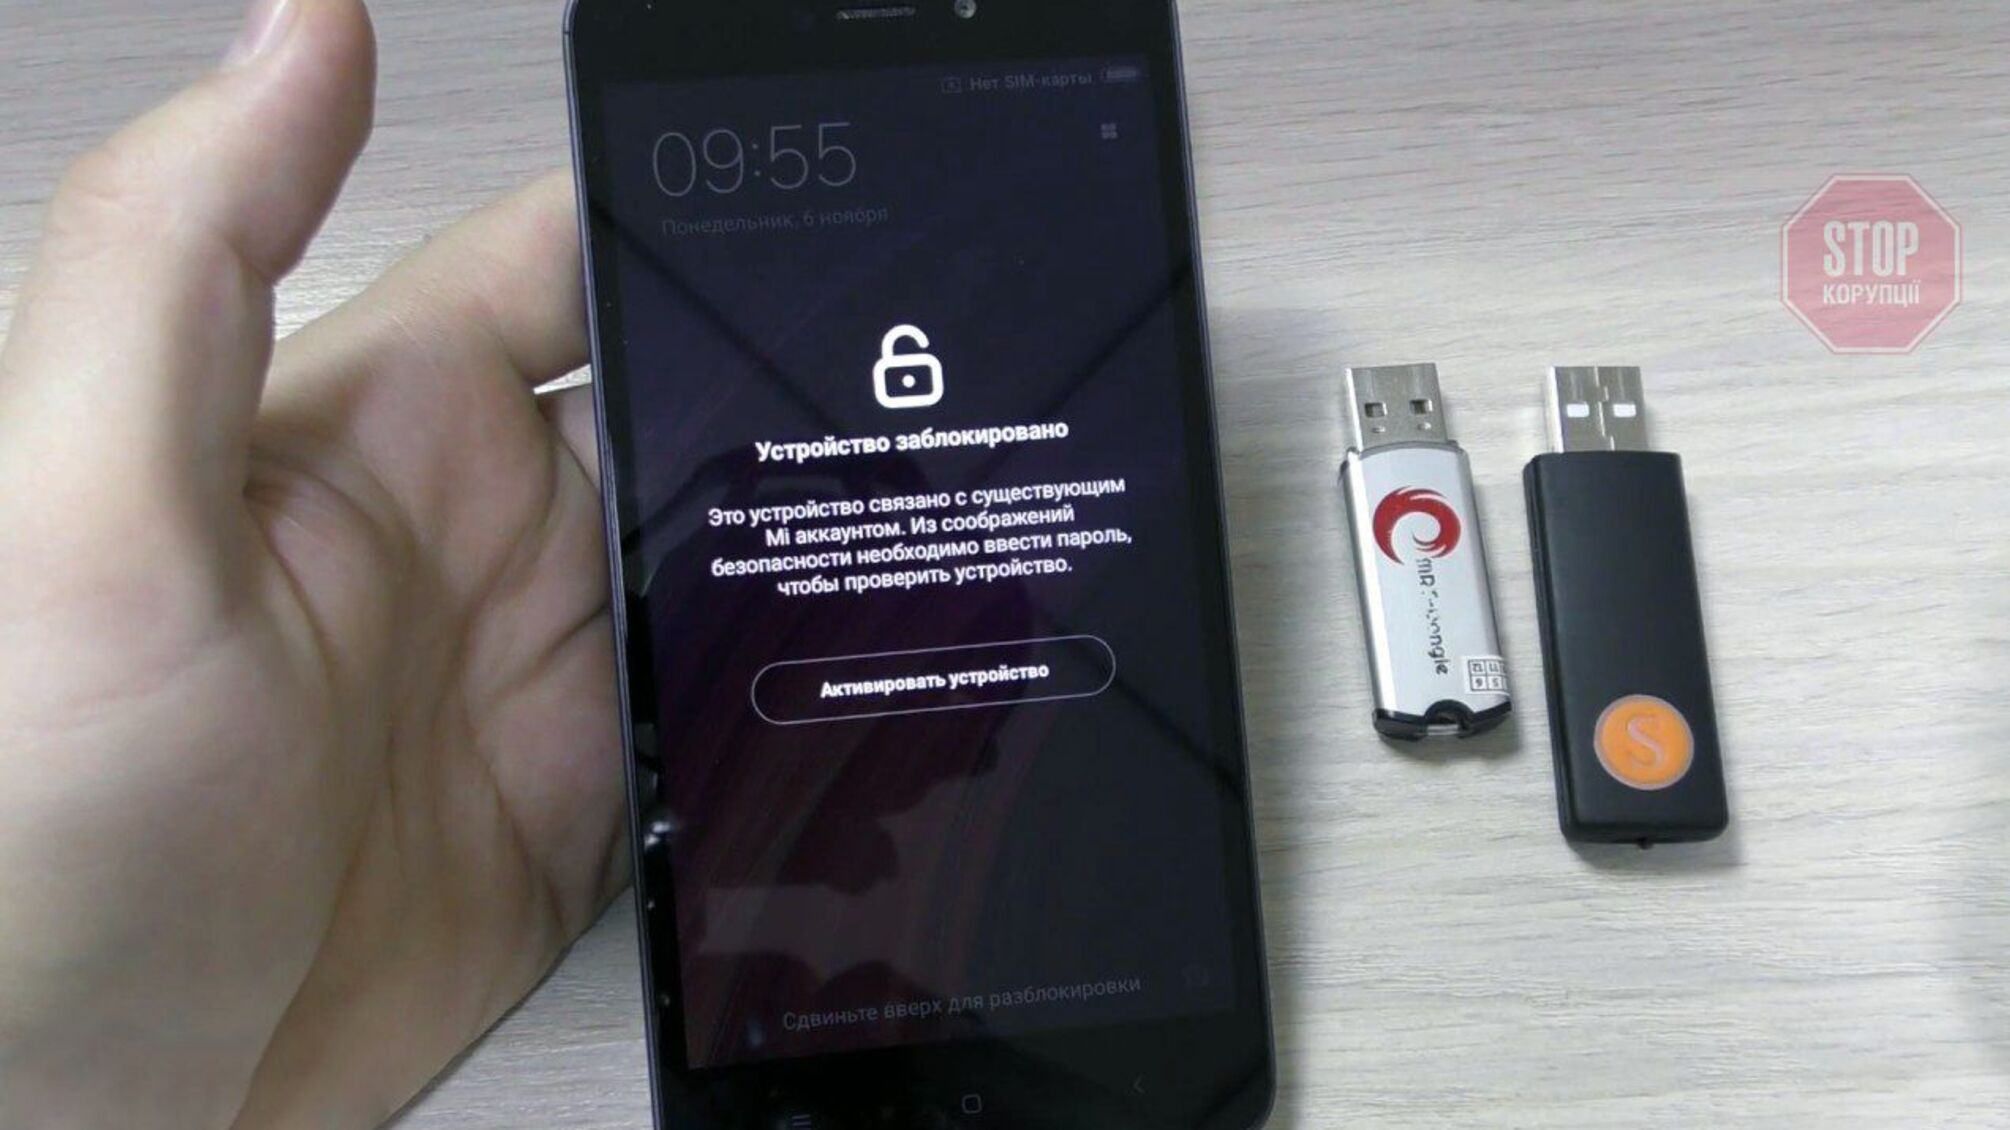 Известная компания начала блокировать свои смартфоны в оккупированном Крыму